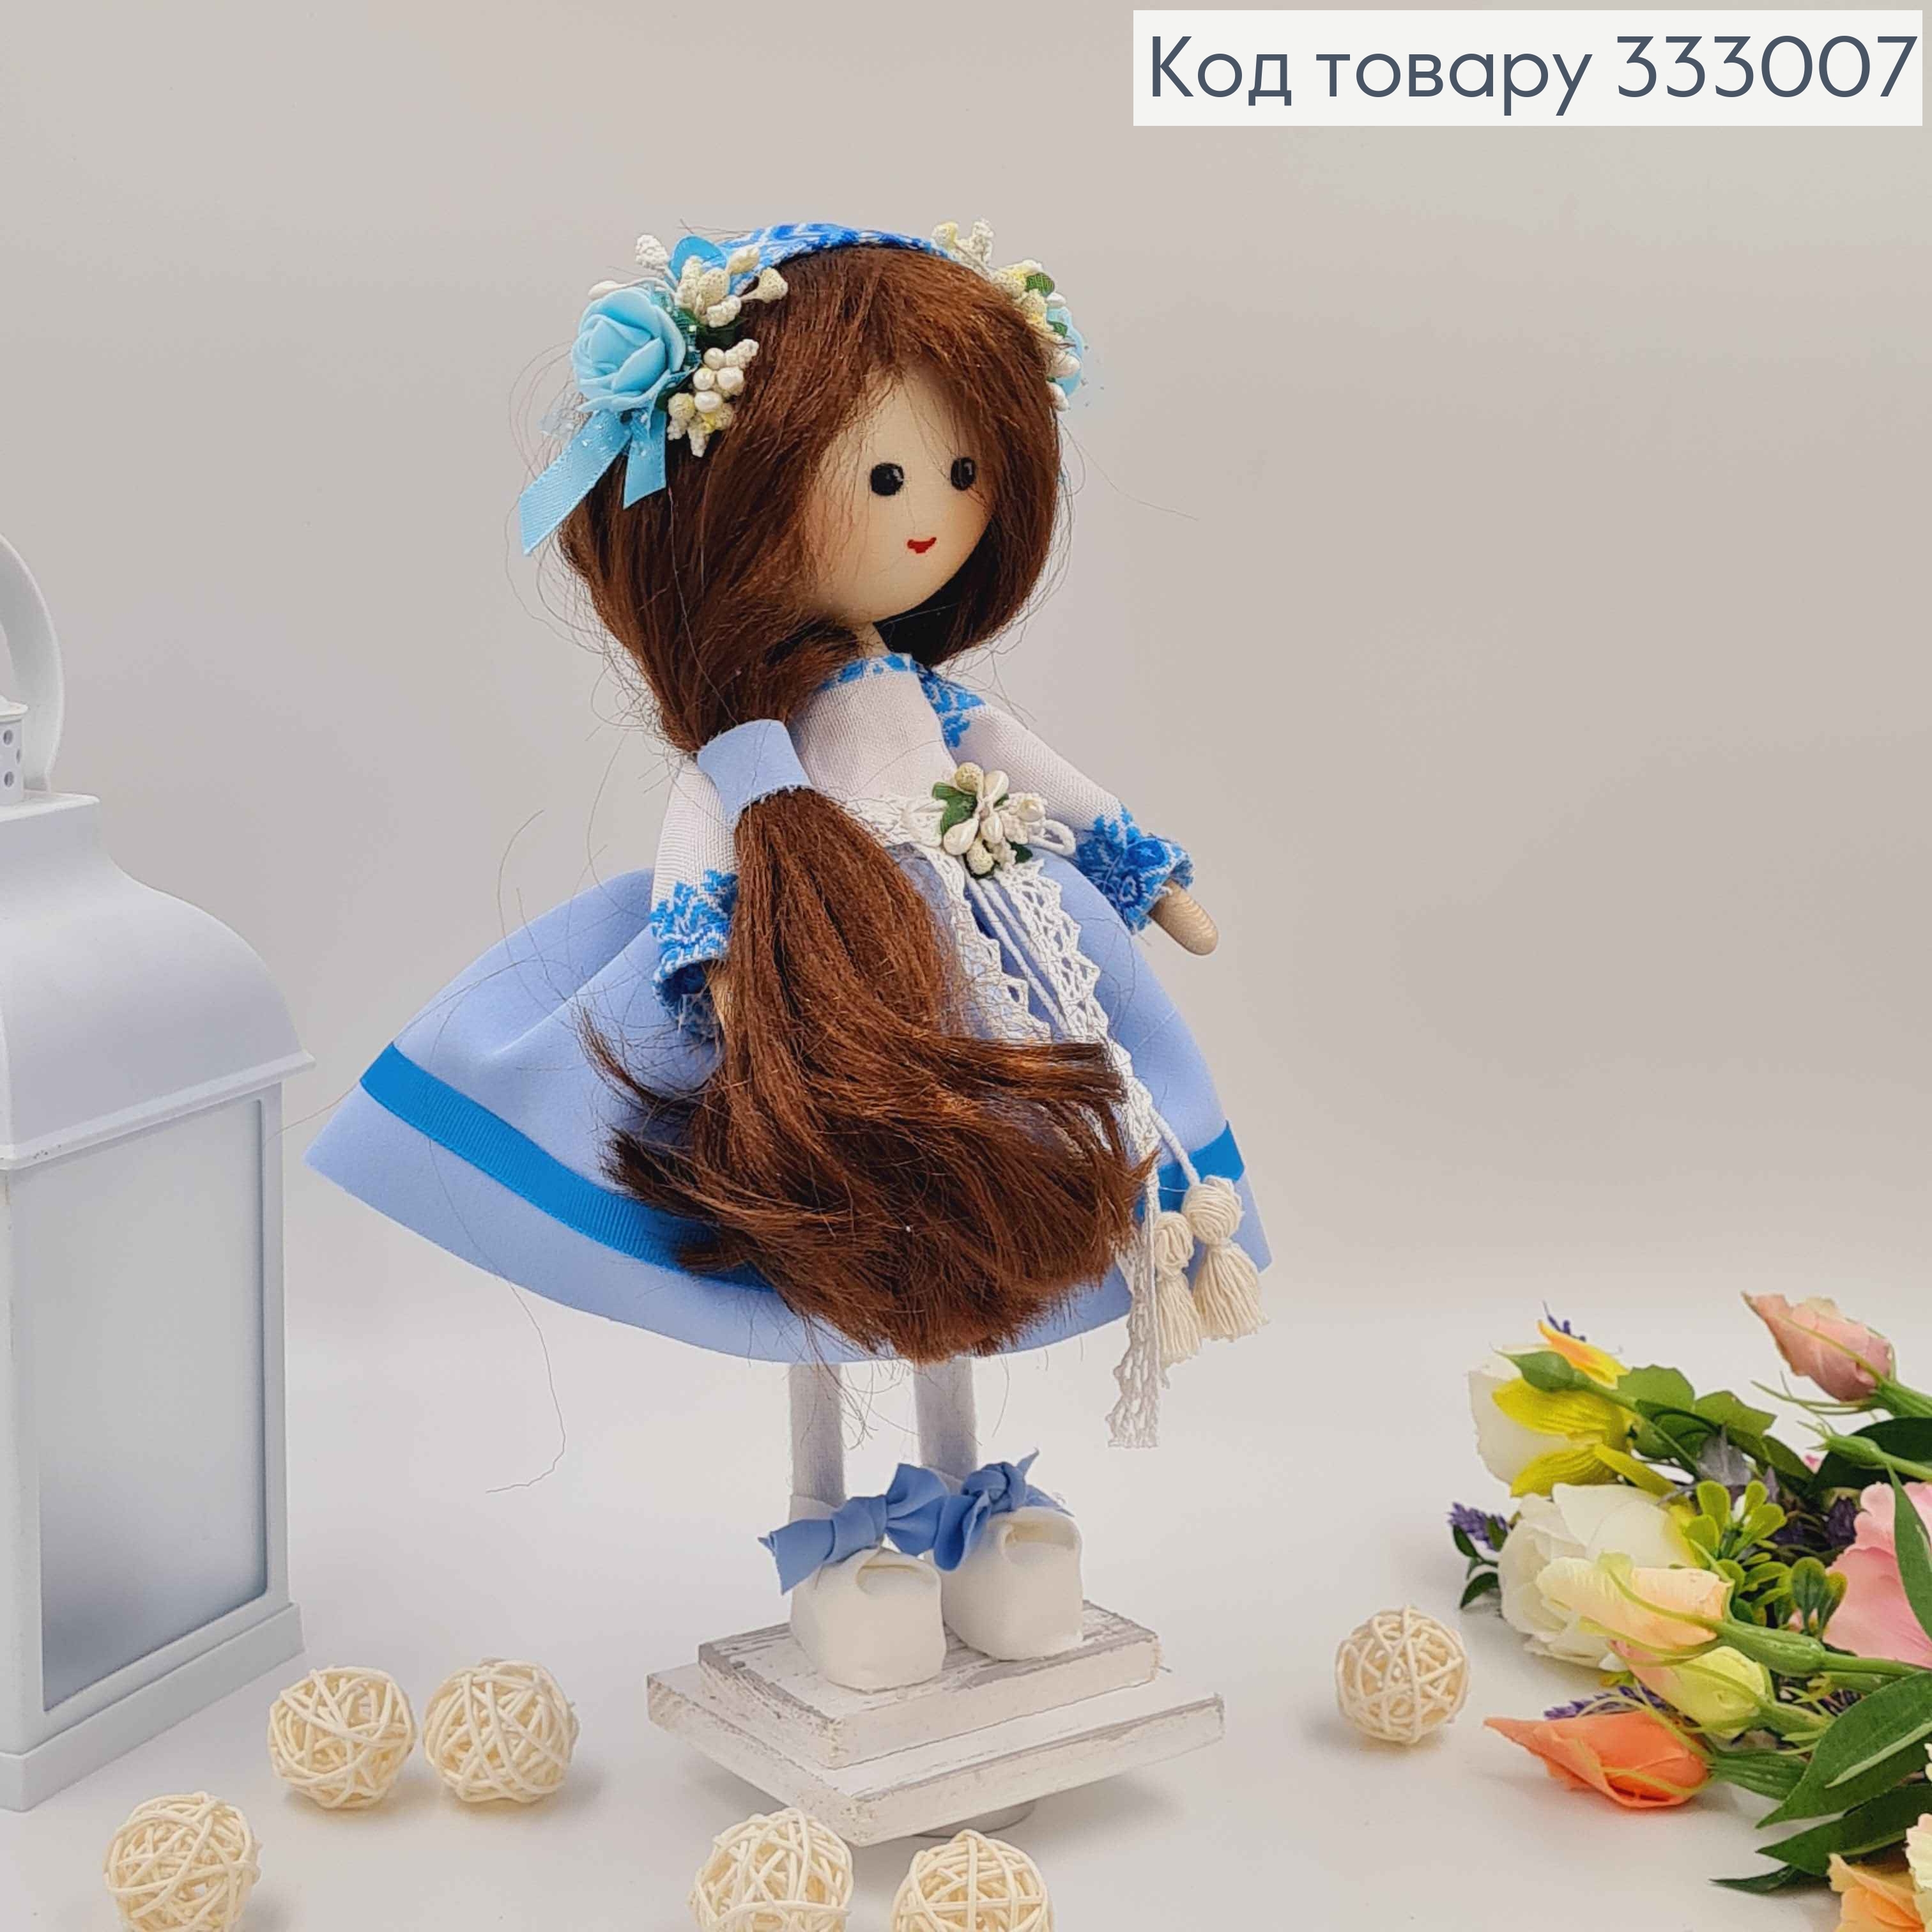 Кукла ДЕВОЧКА, "С рясовыми волосами" в голубом платье, высота 32см, ручная работа, Украина 333007 фото 2